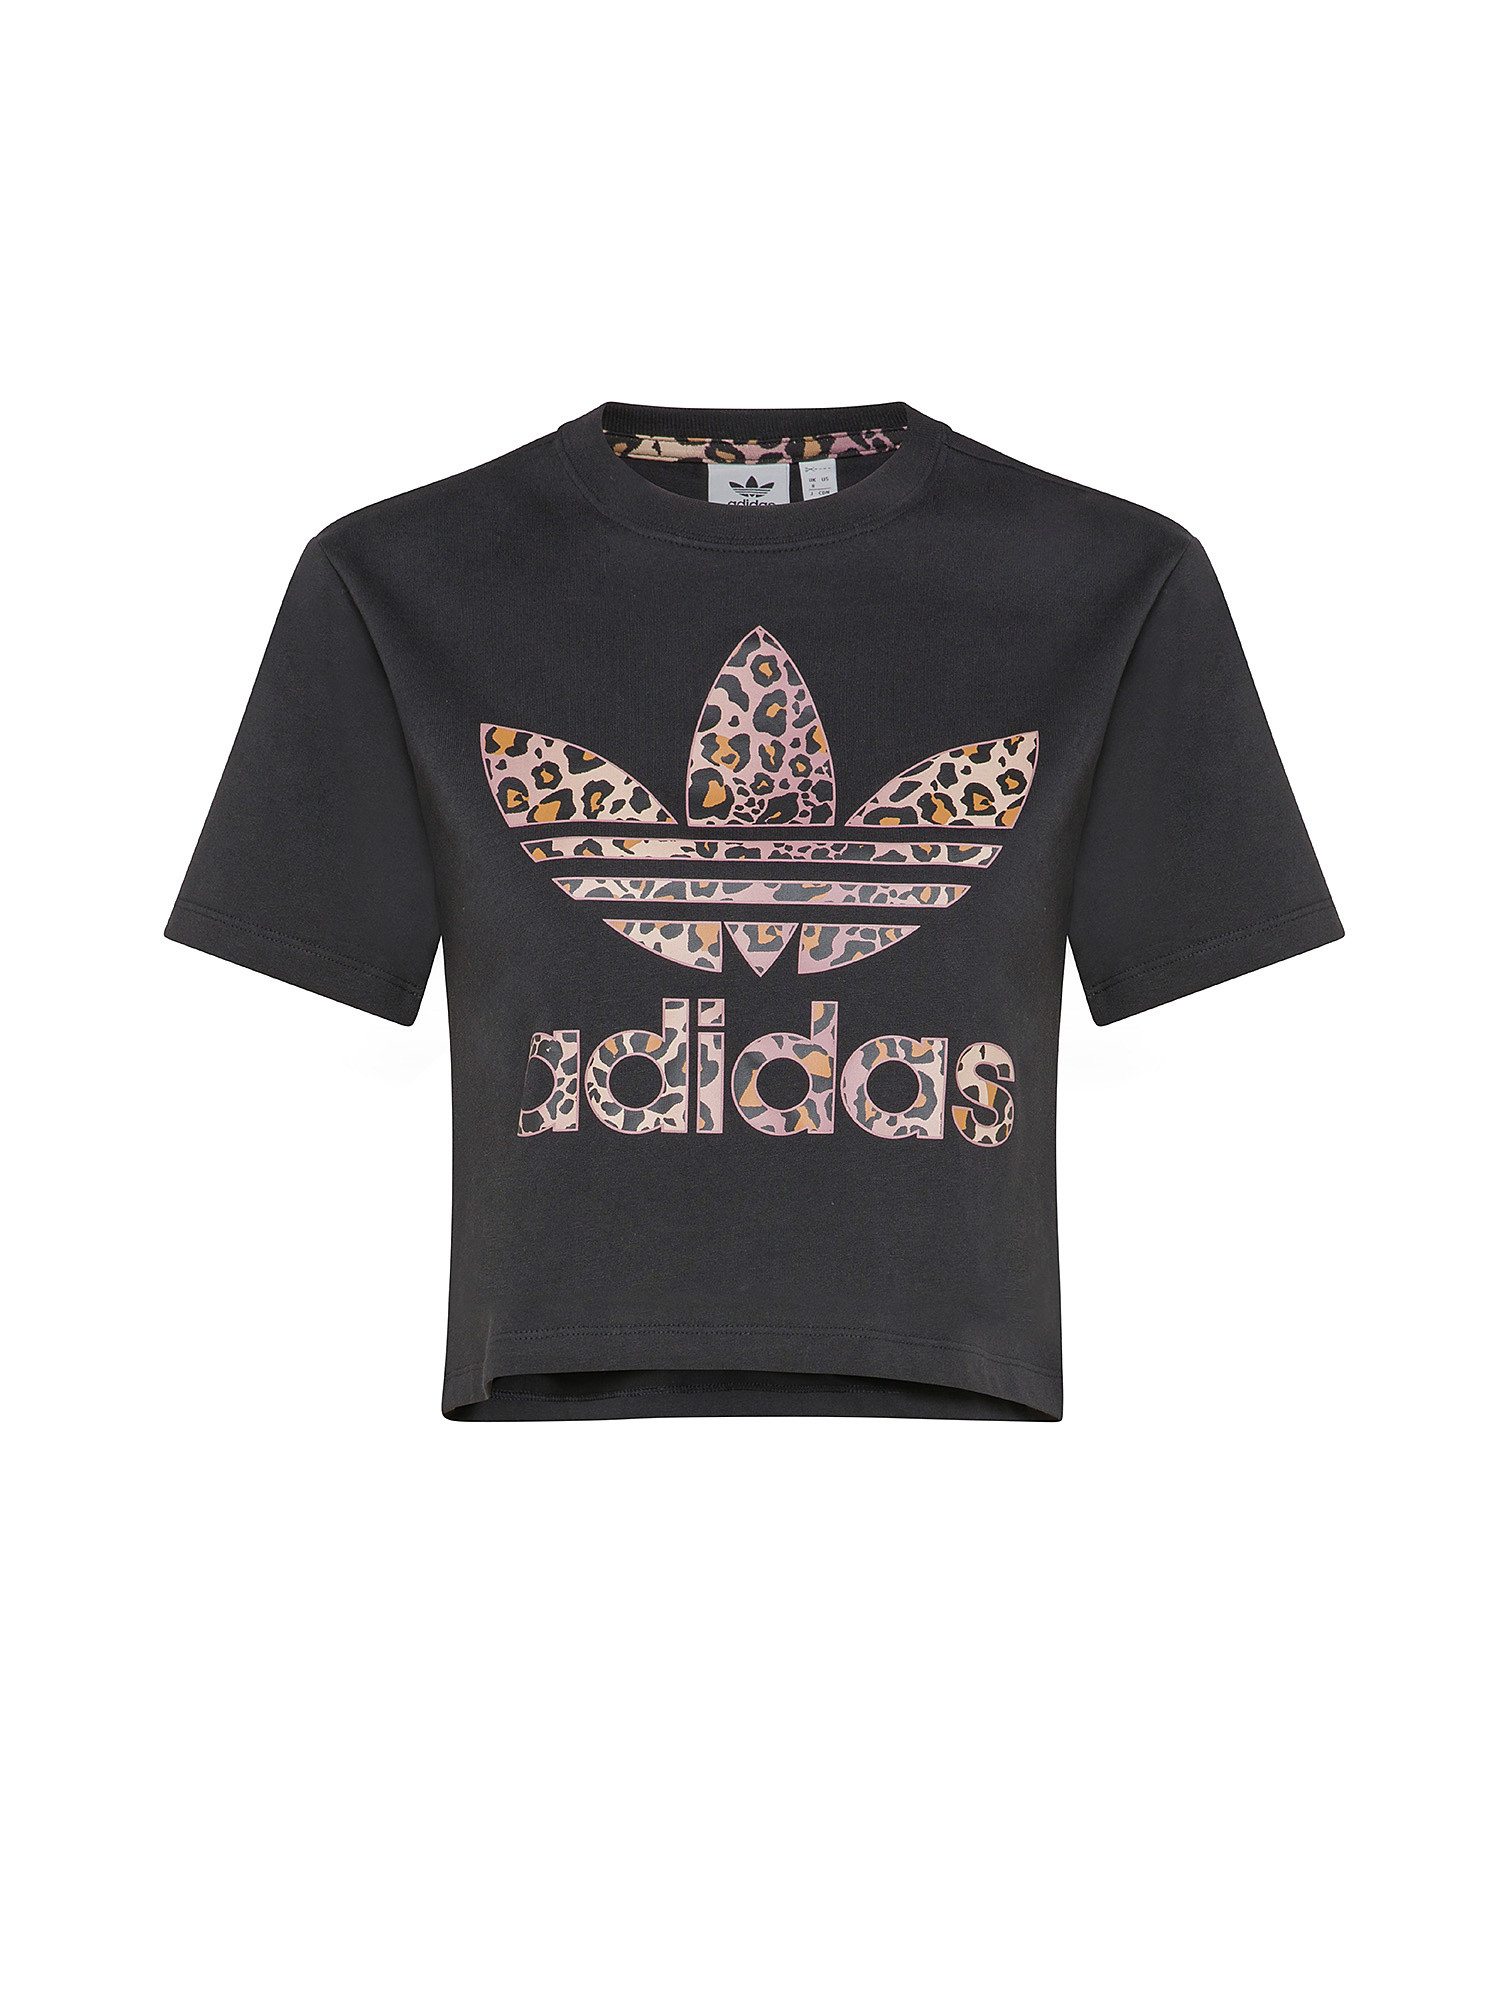 Adidas - T-shirt con logo, Nero, large image number 2